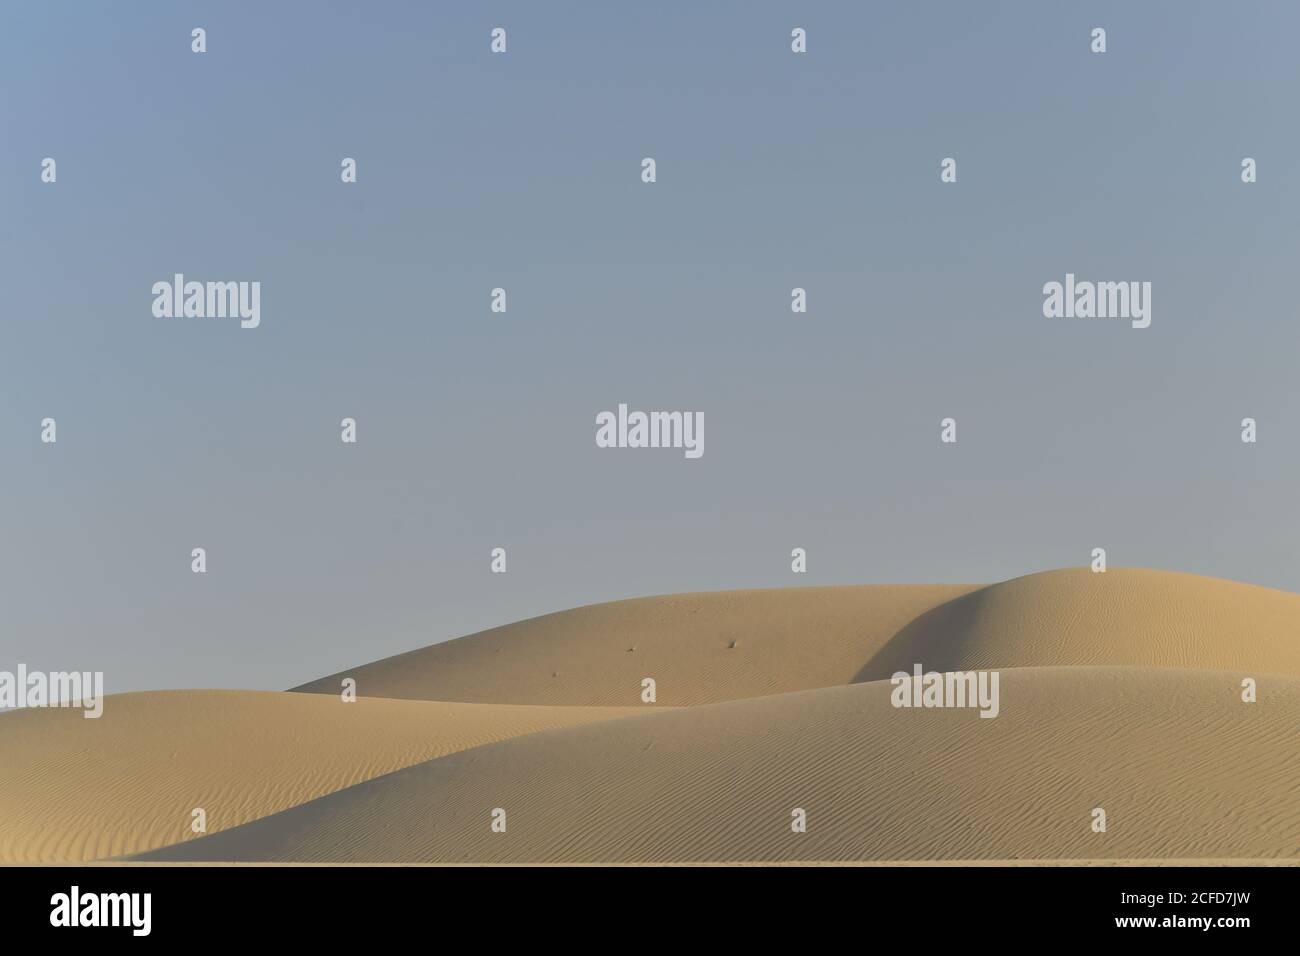 Arabische Halbinsel Wüste Sanddünen, die in verschiedenen Formen und Größen von den wechselnden Winden der Wüste Umwelt Landschaften konturiert. Stockfoto